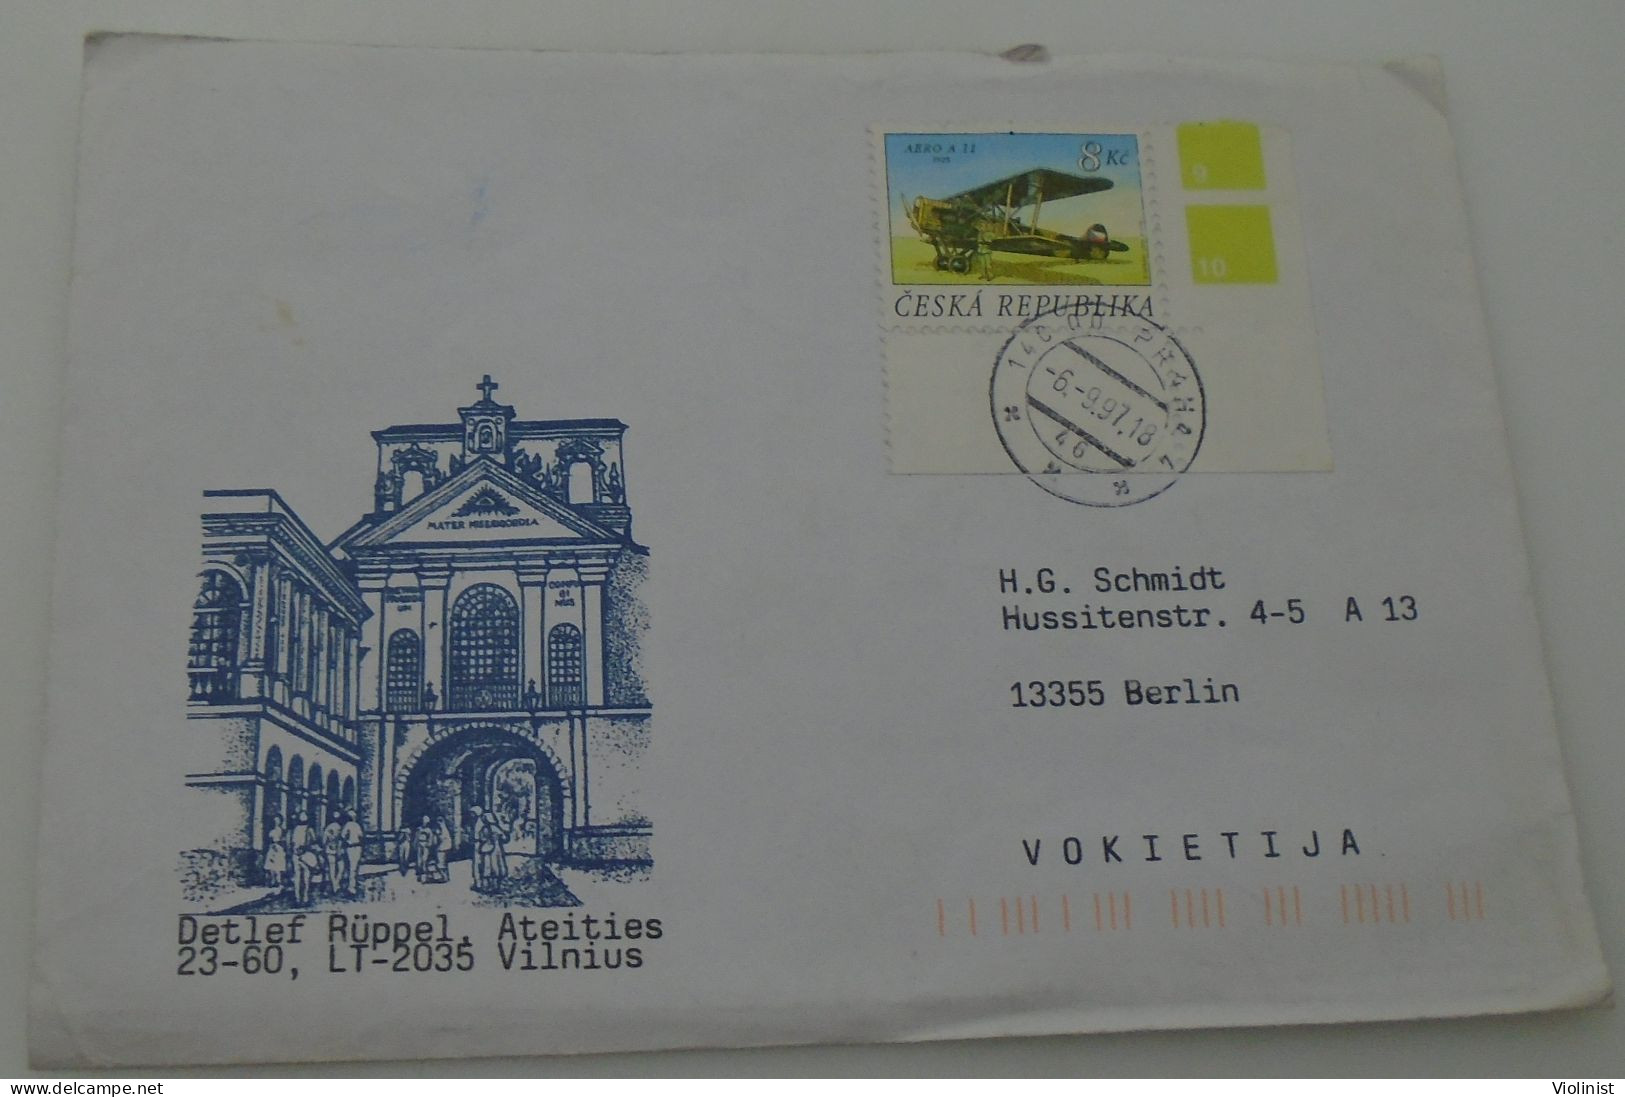 Datlef Ruppel-Ateities,Vilnius- Postmark PRAHA, Czech Republic - Covers